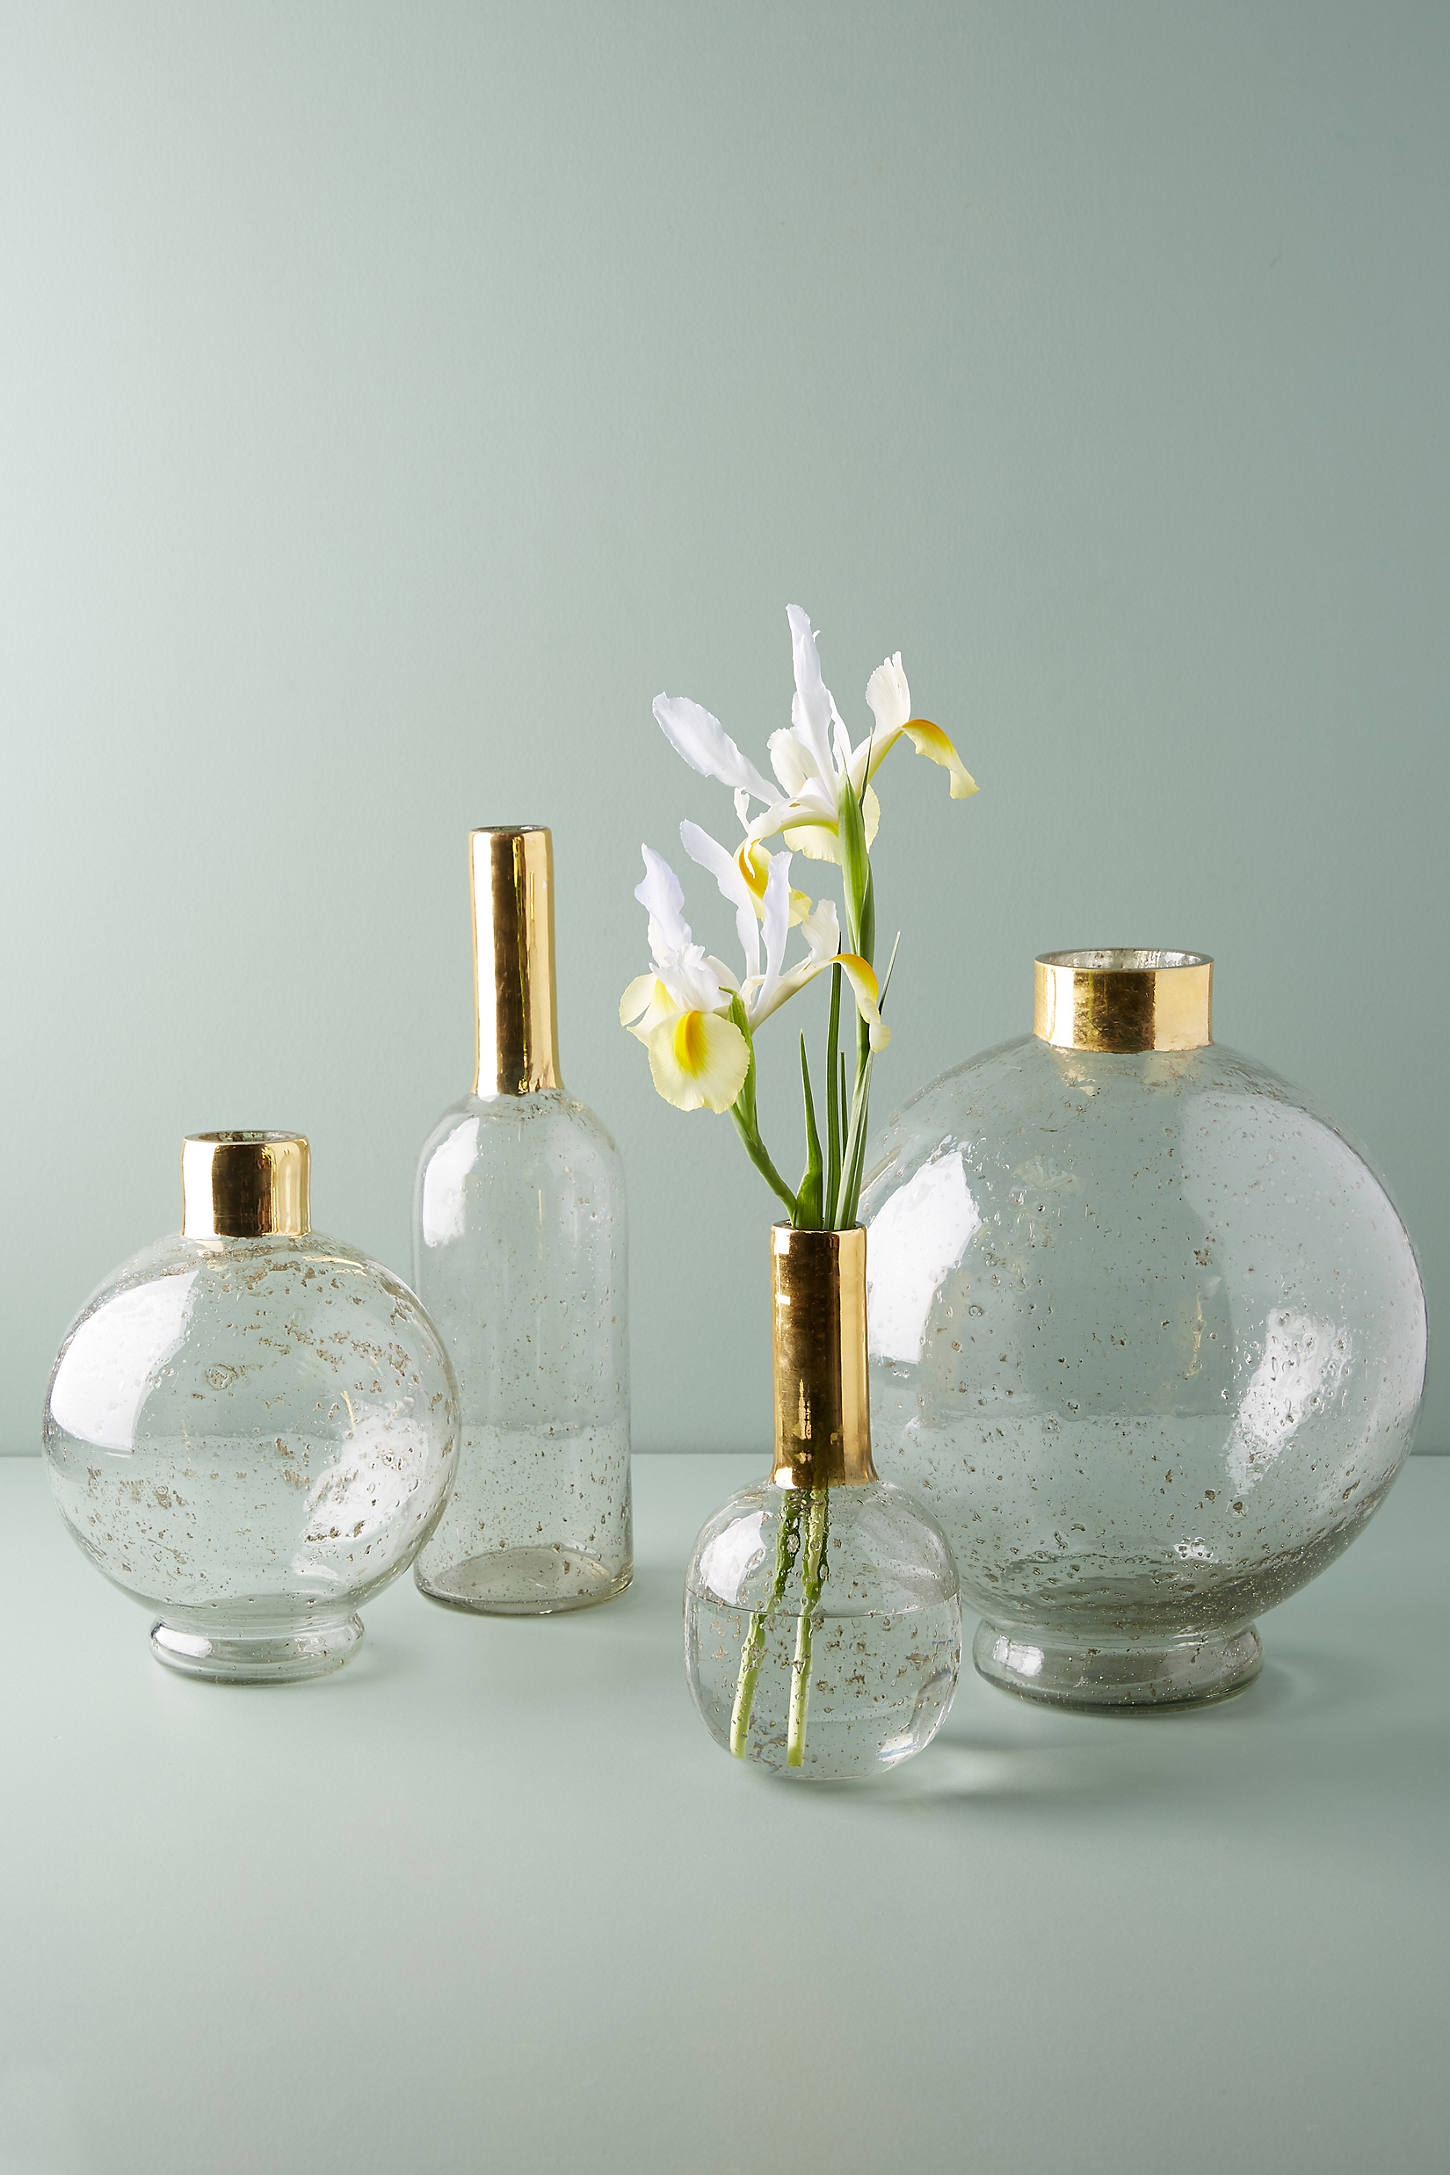 Gilded Vase - LARGE ROUND - Image 0